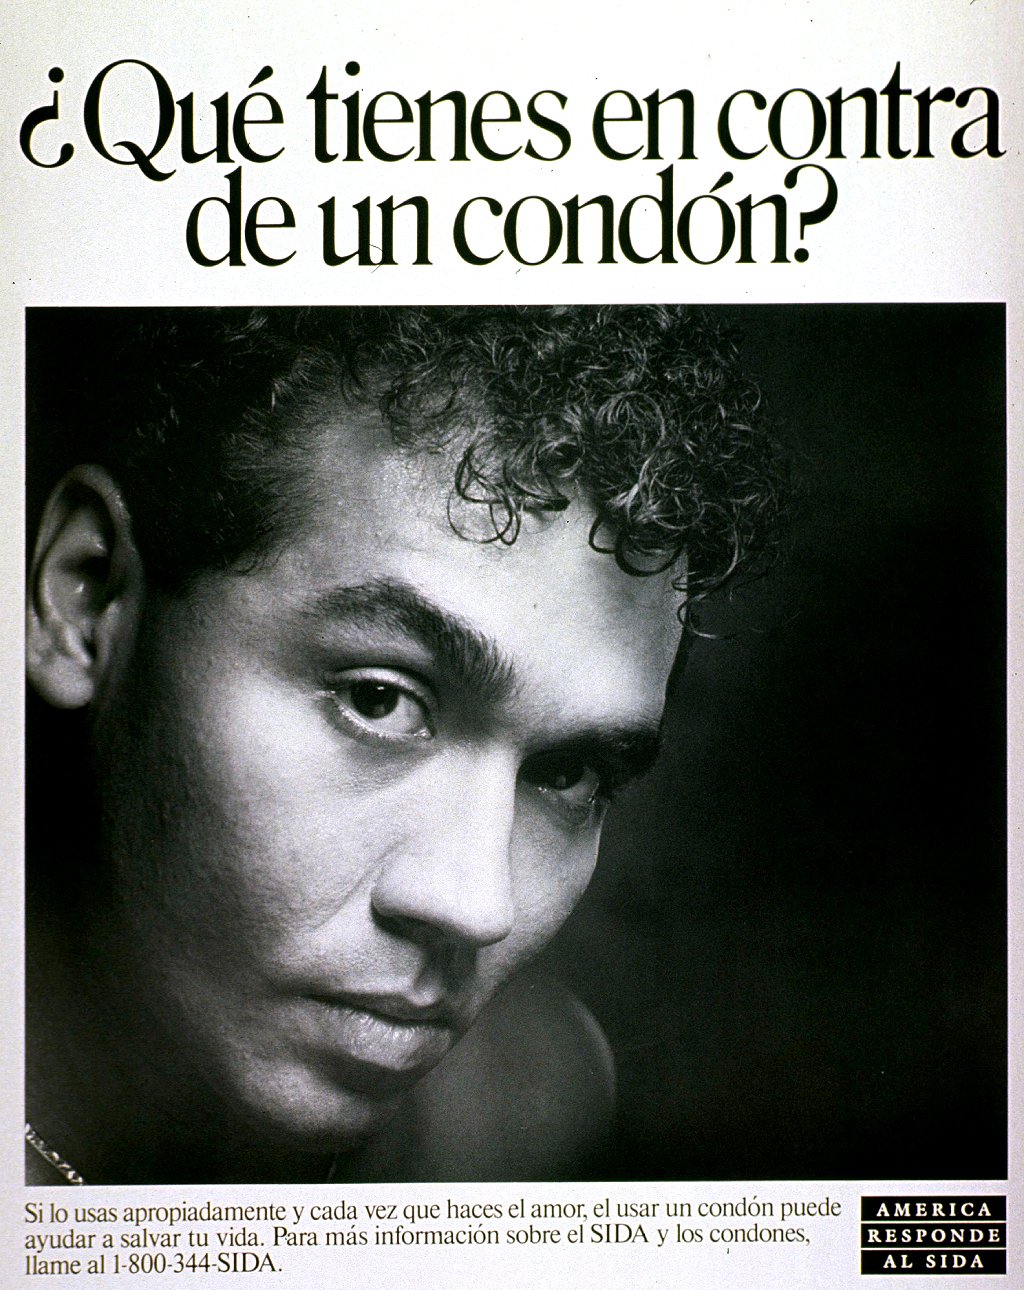 Cartaz em espanhol para a campanha contra a AIDS nos Estados Unidos